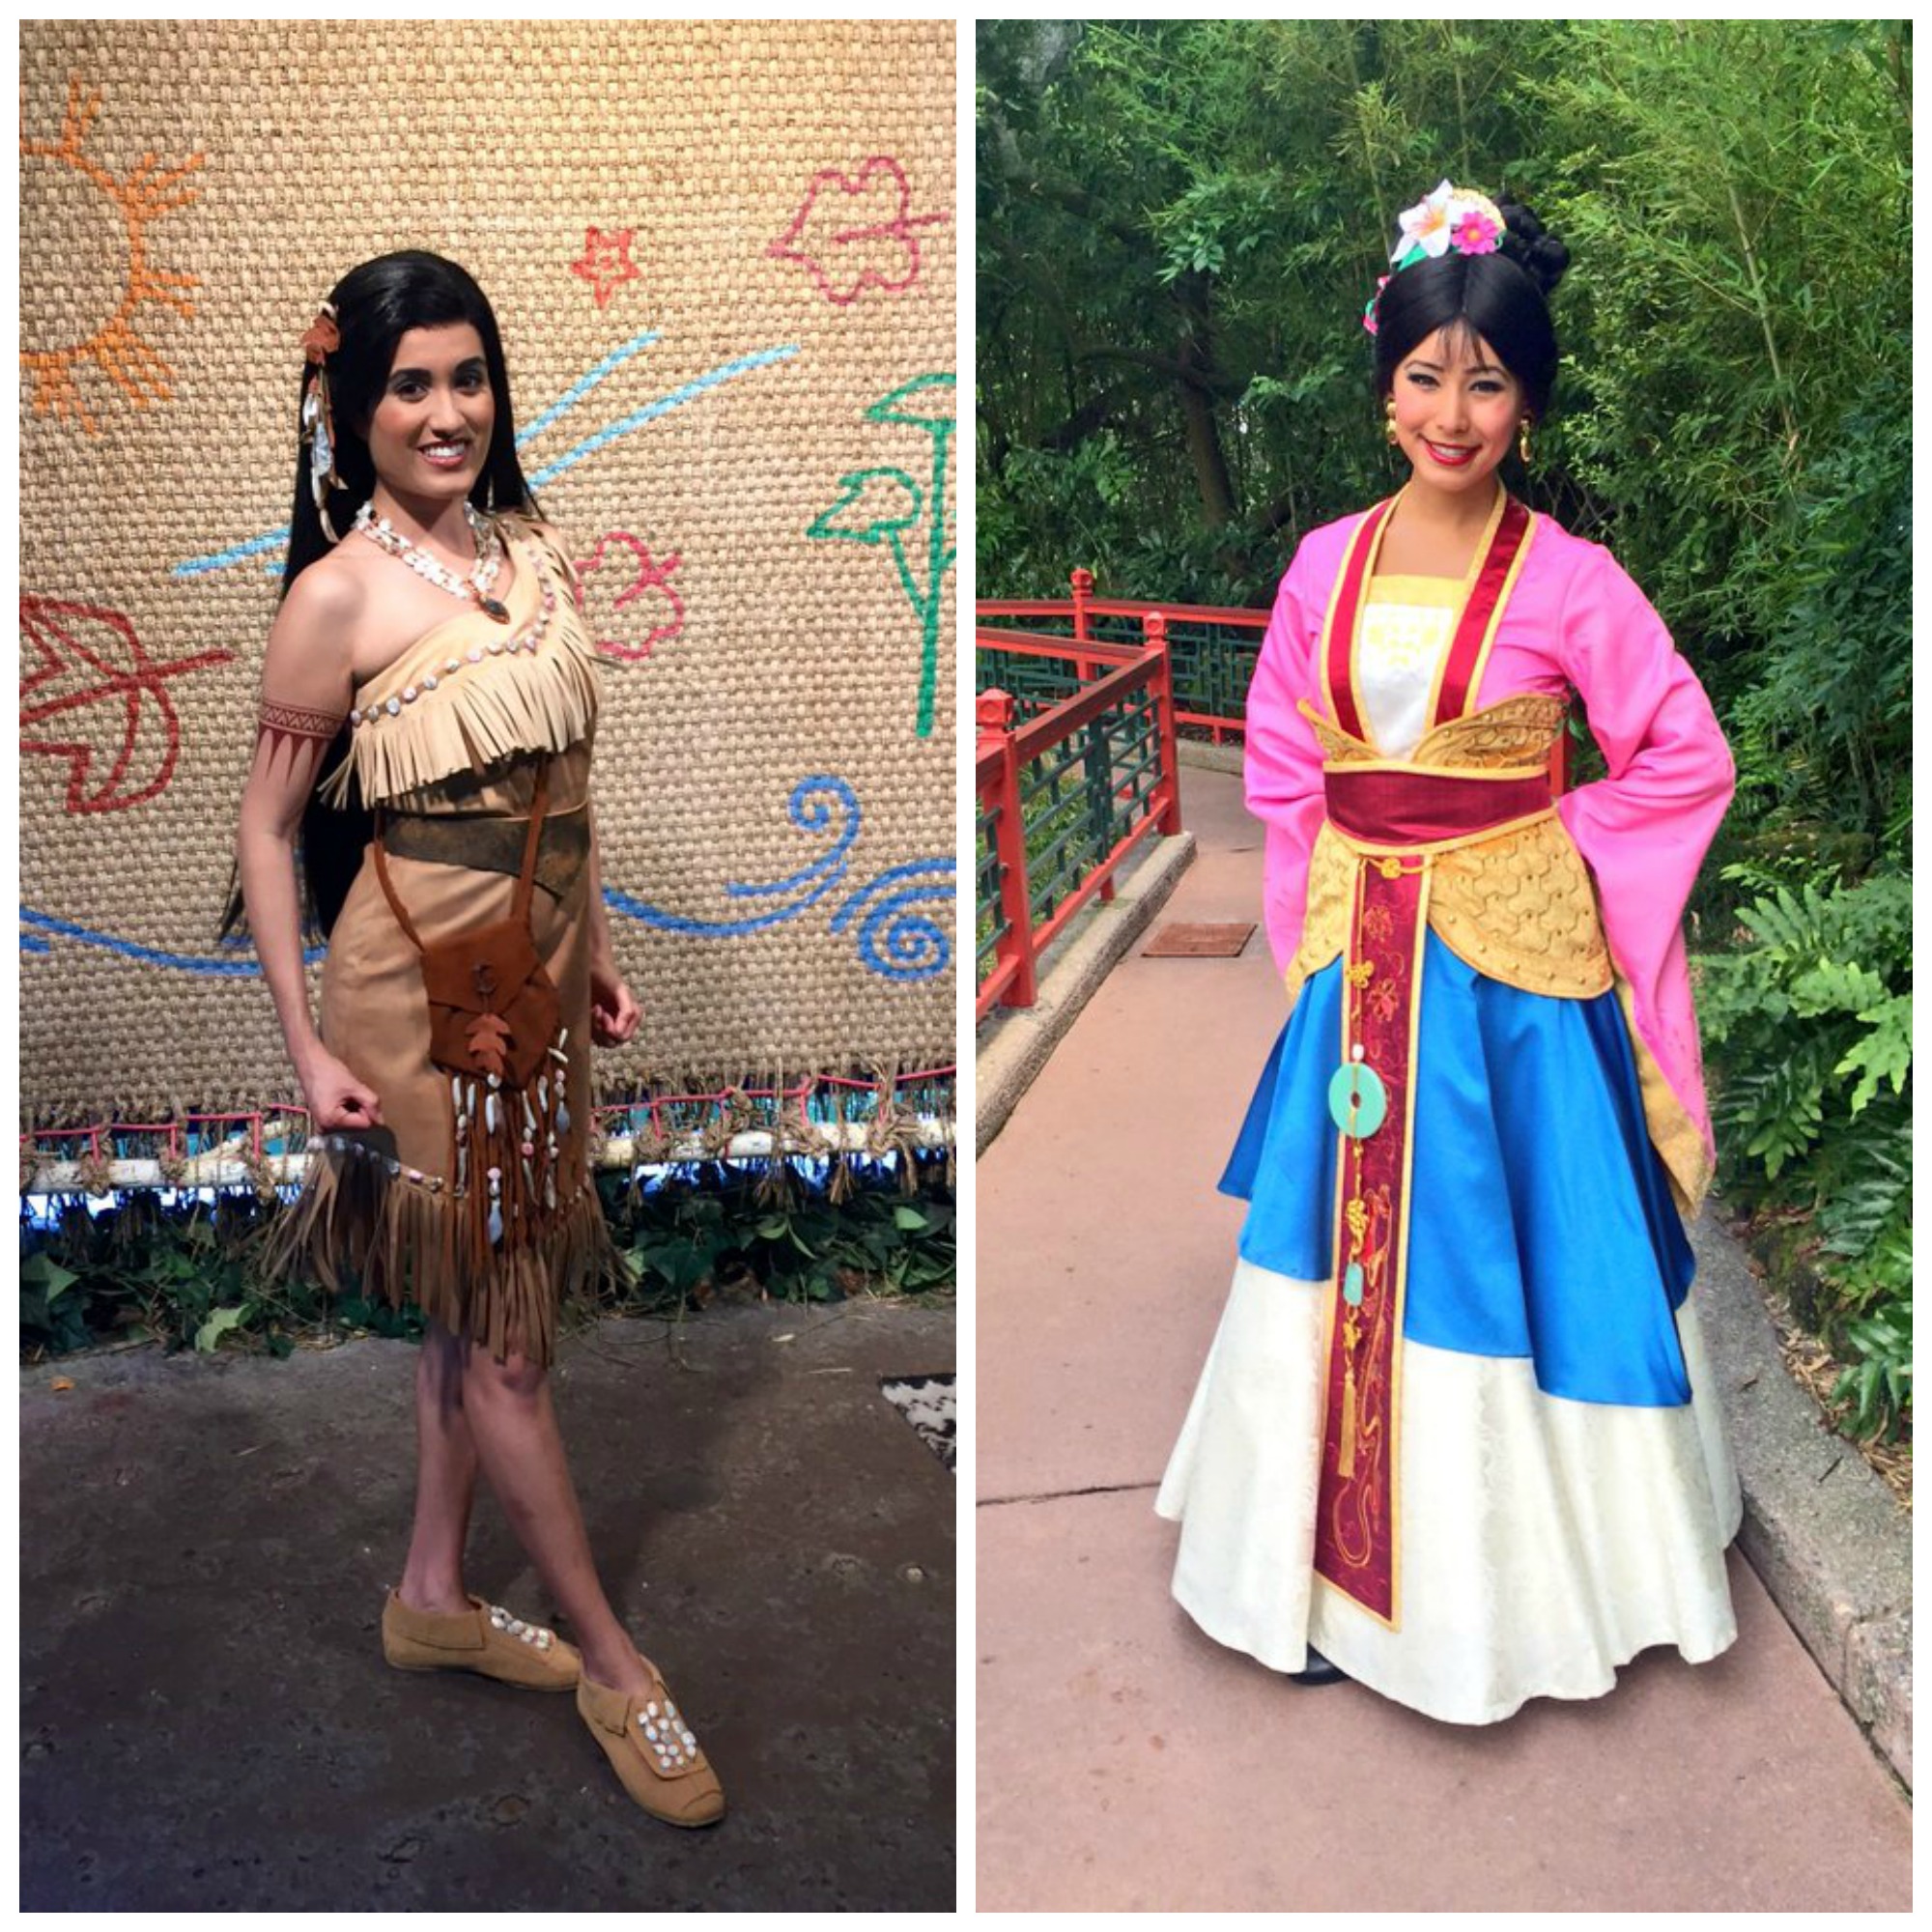 New Look for Pocahontas and Mulan at Walt Disney World